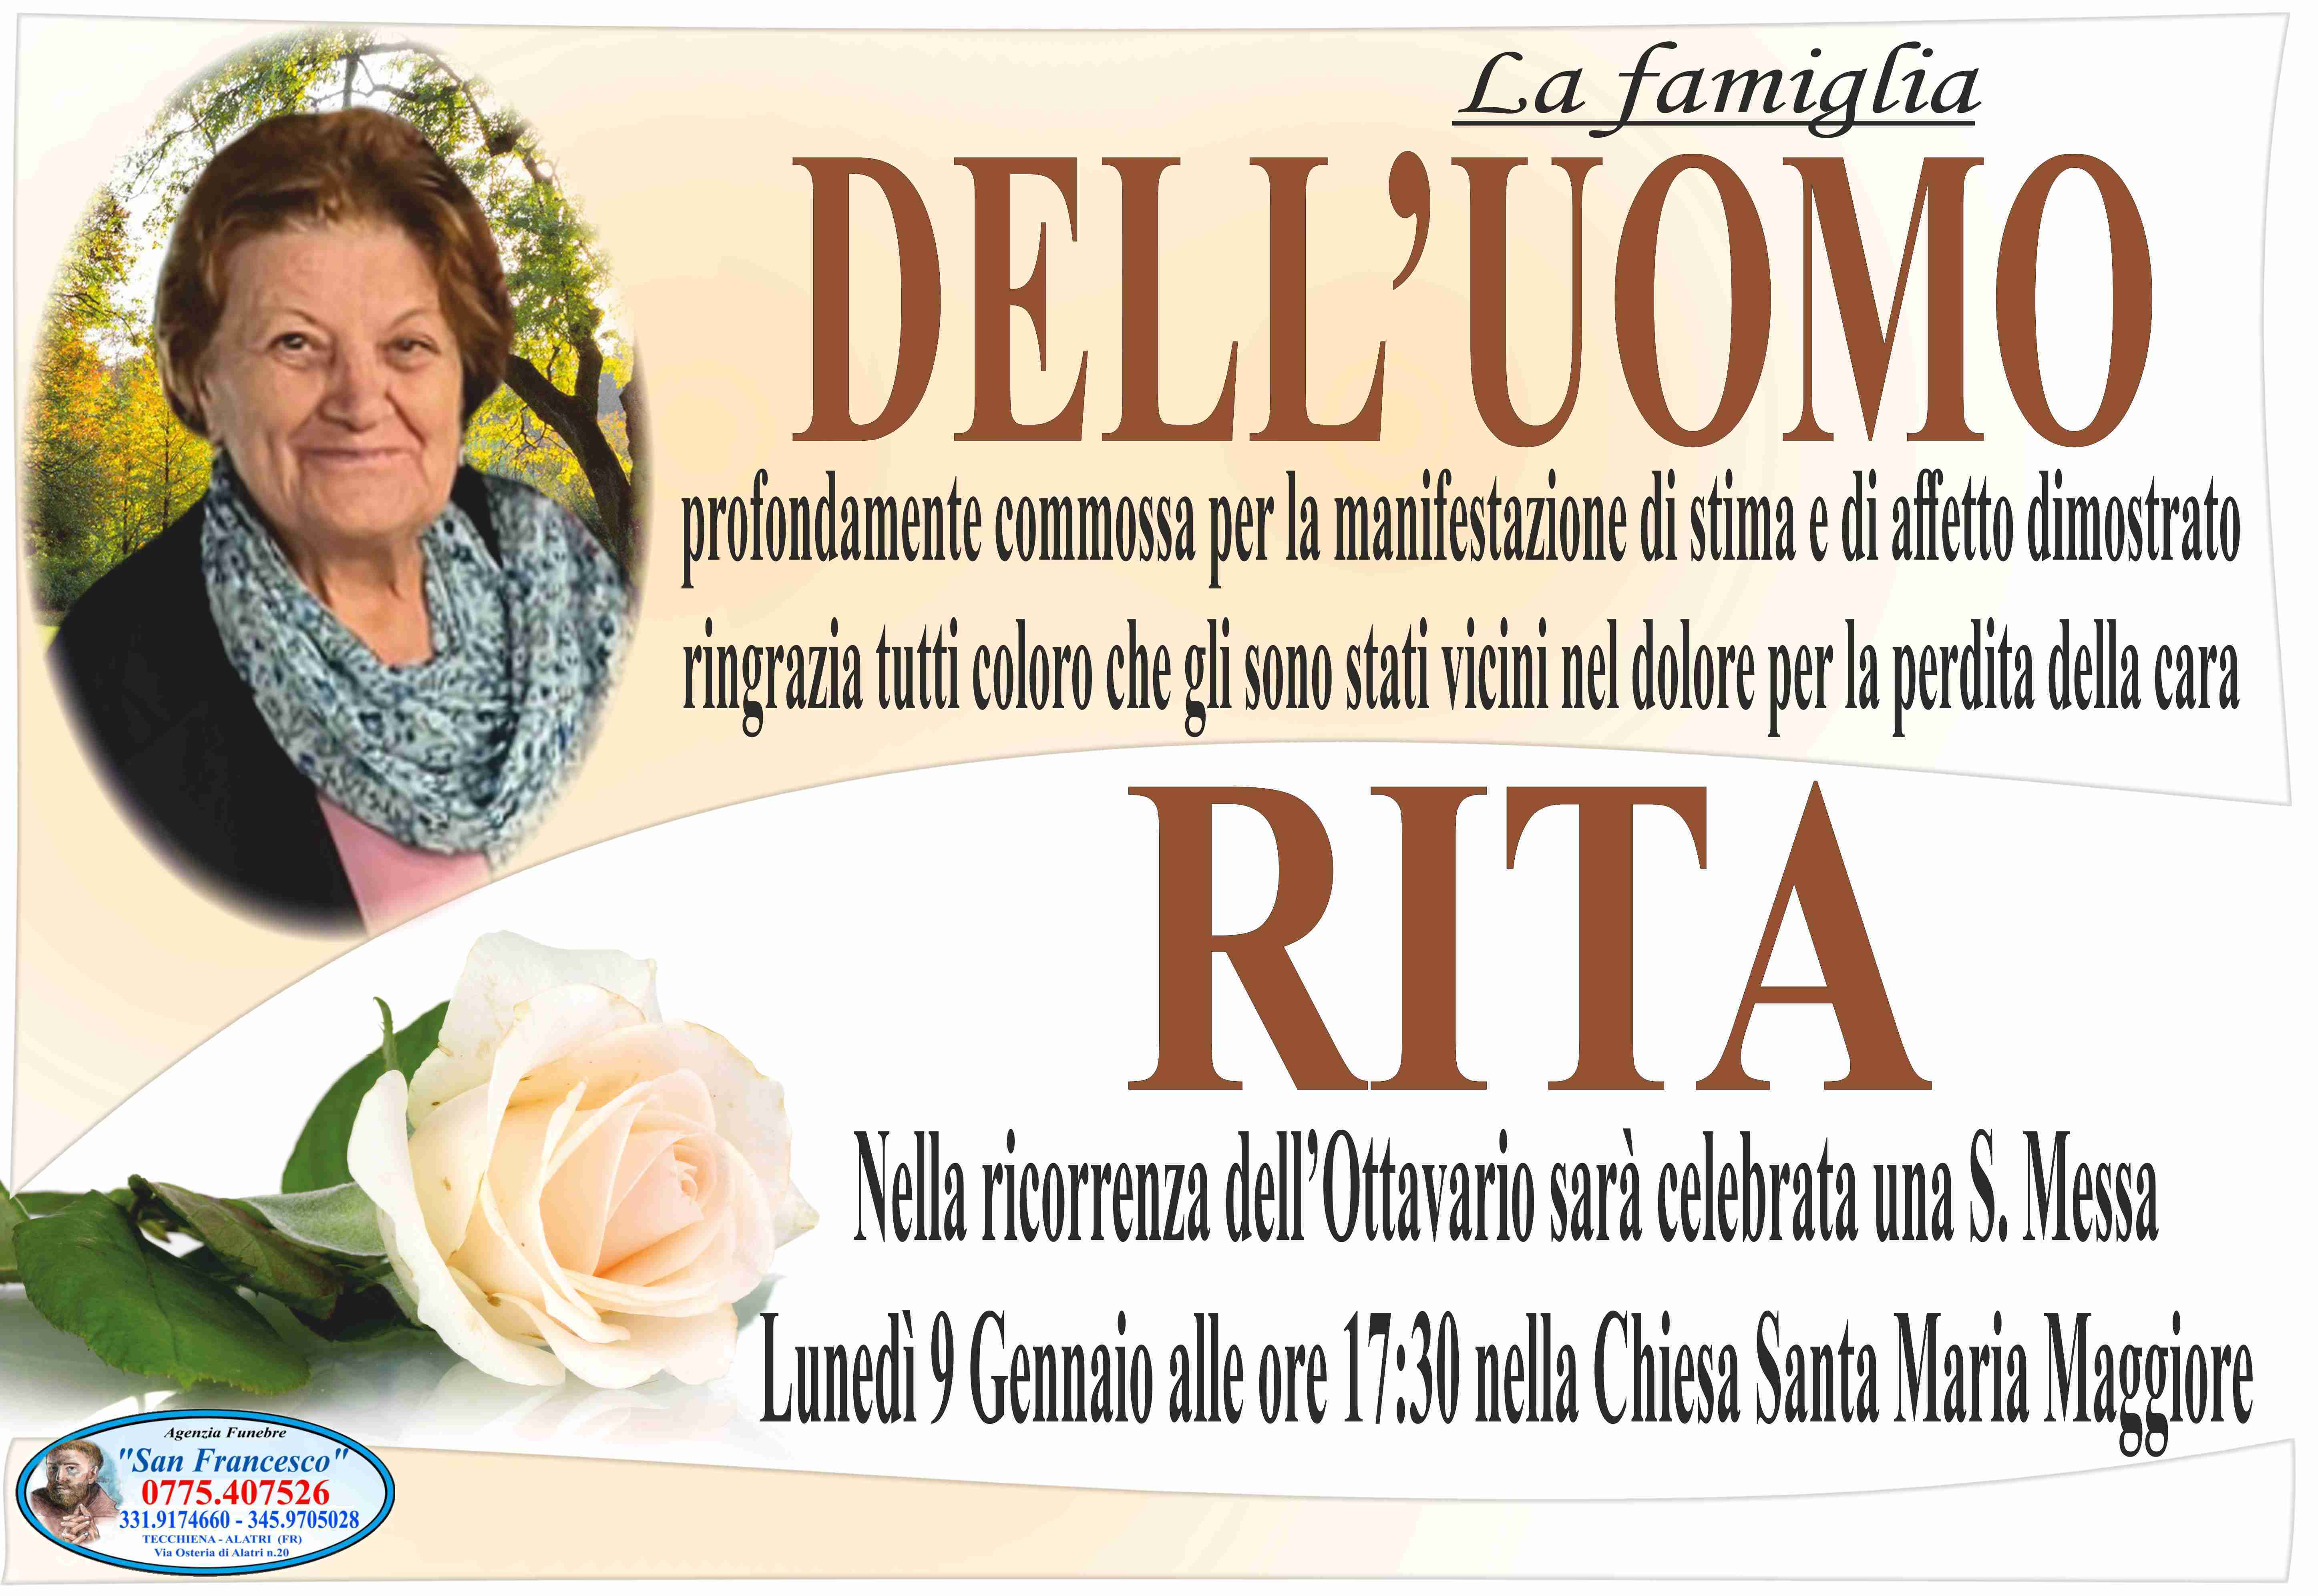 Rita Angelucci